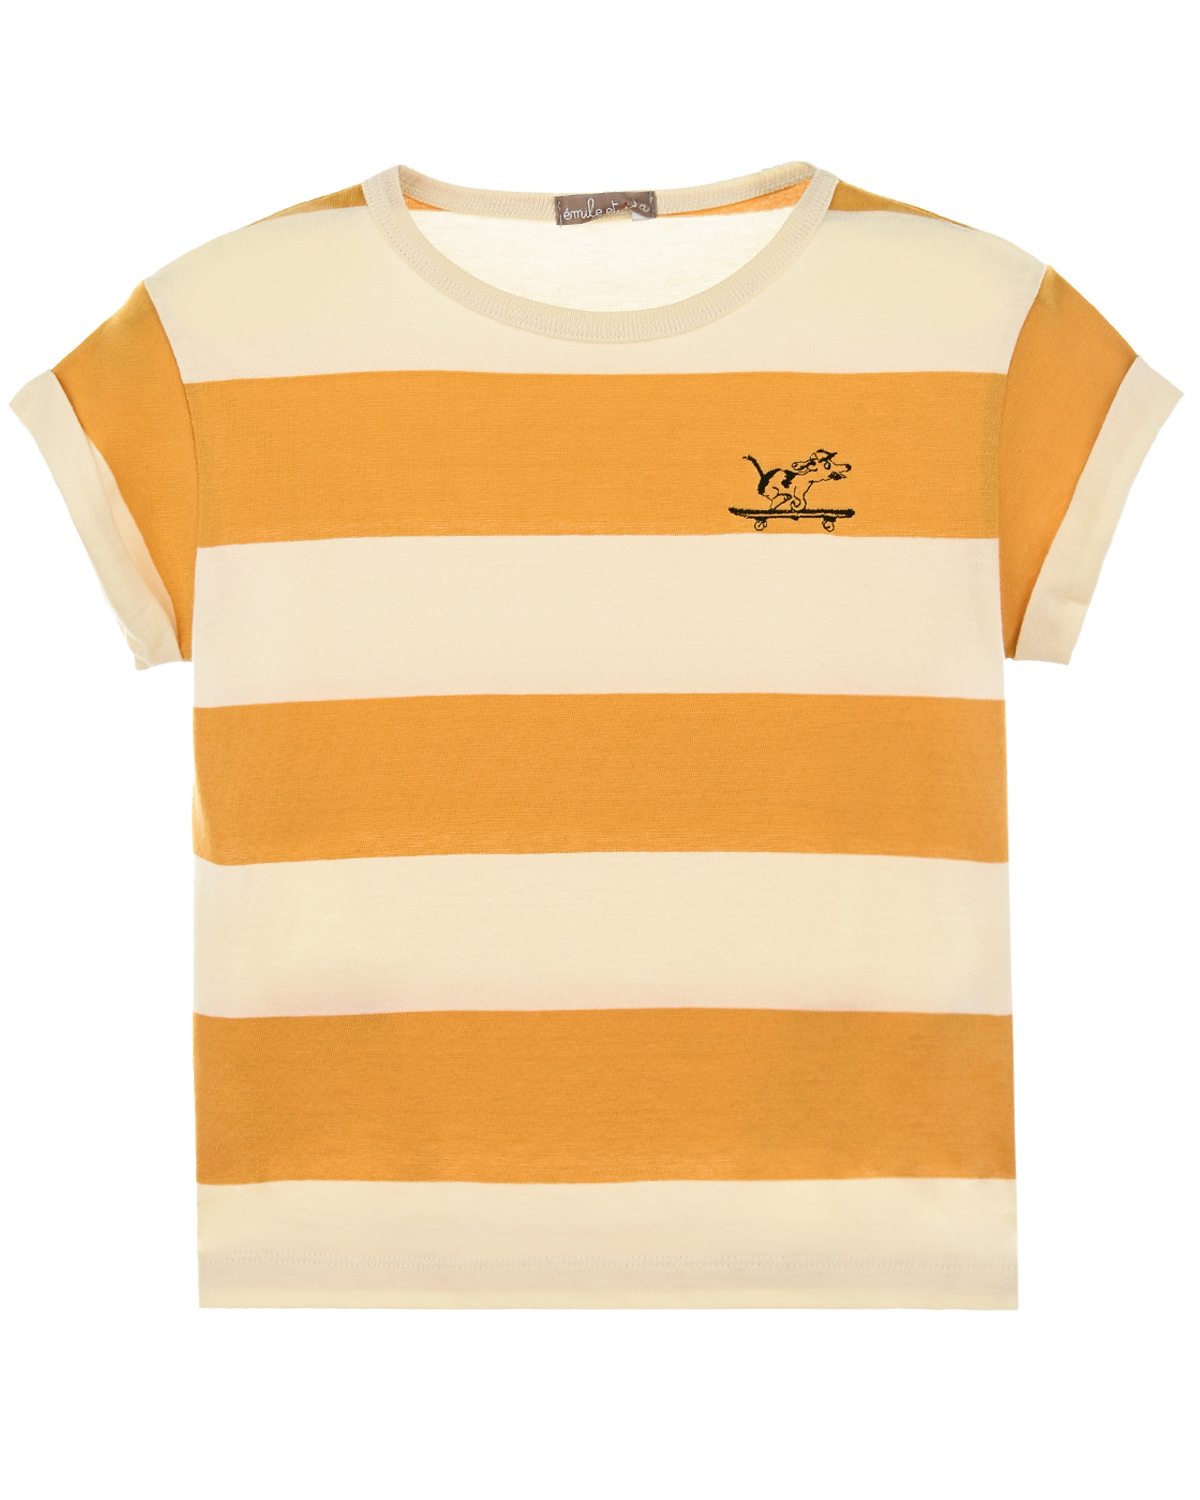 Хлопковая футболка в широкую полоску Emile et Ida детская, размер 92, цвет мультиколор - фото 1